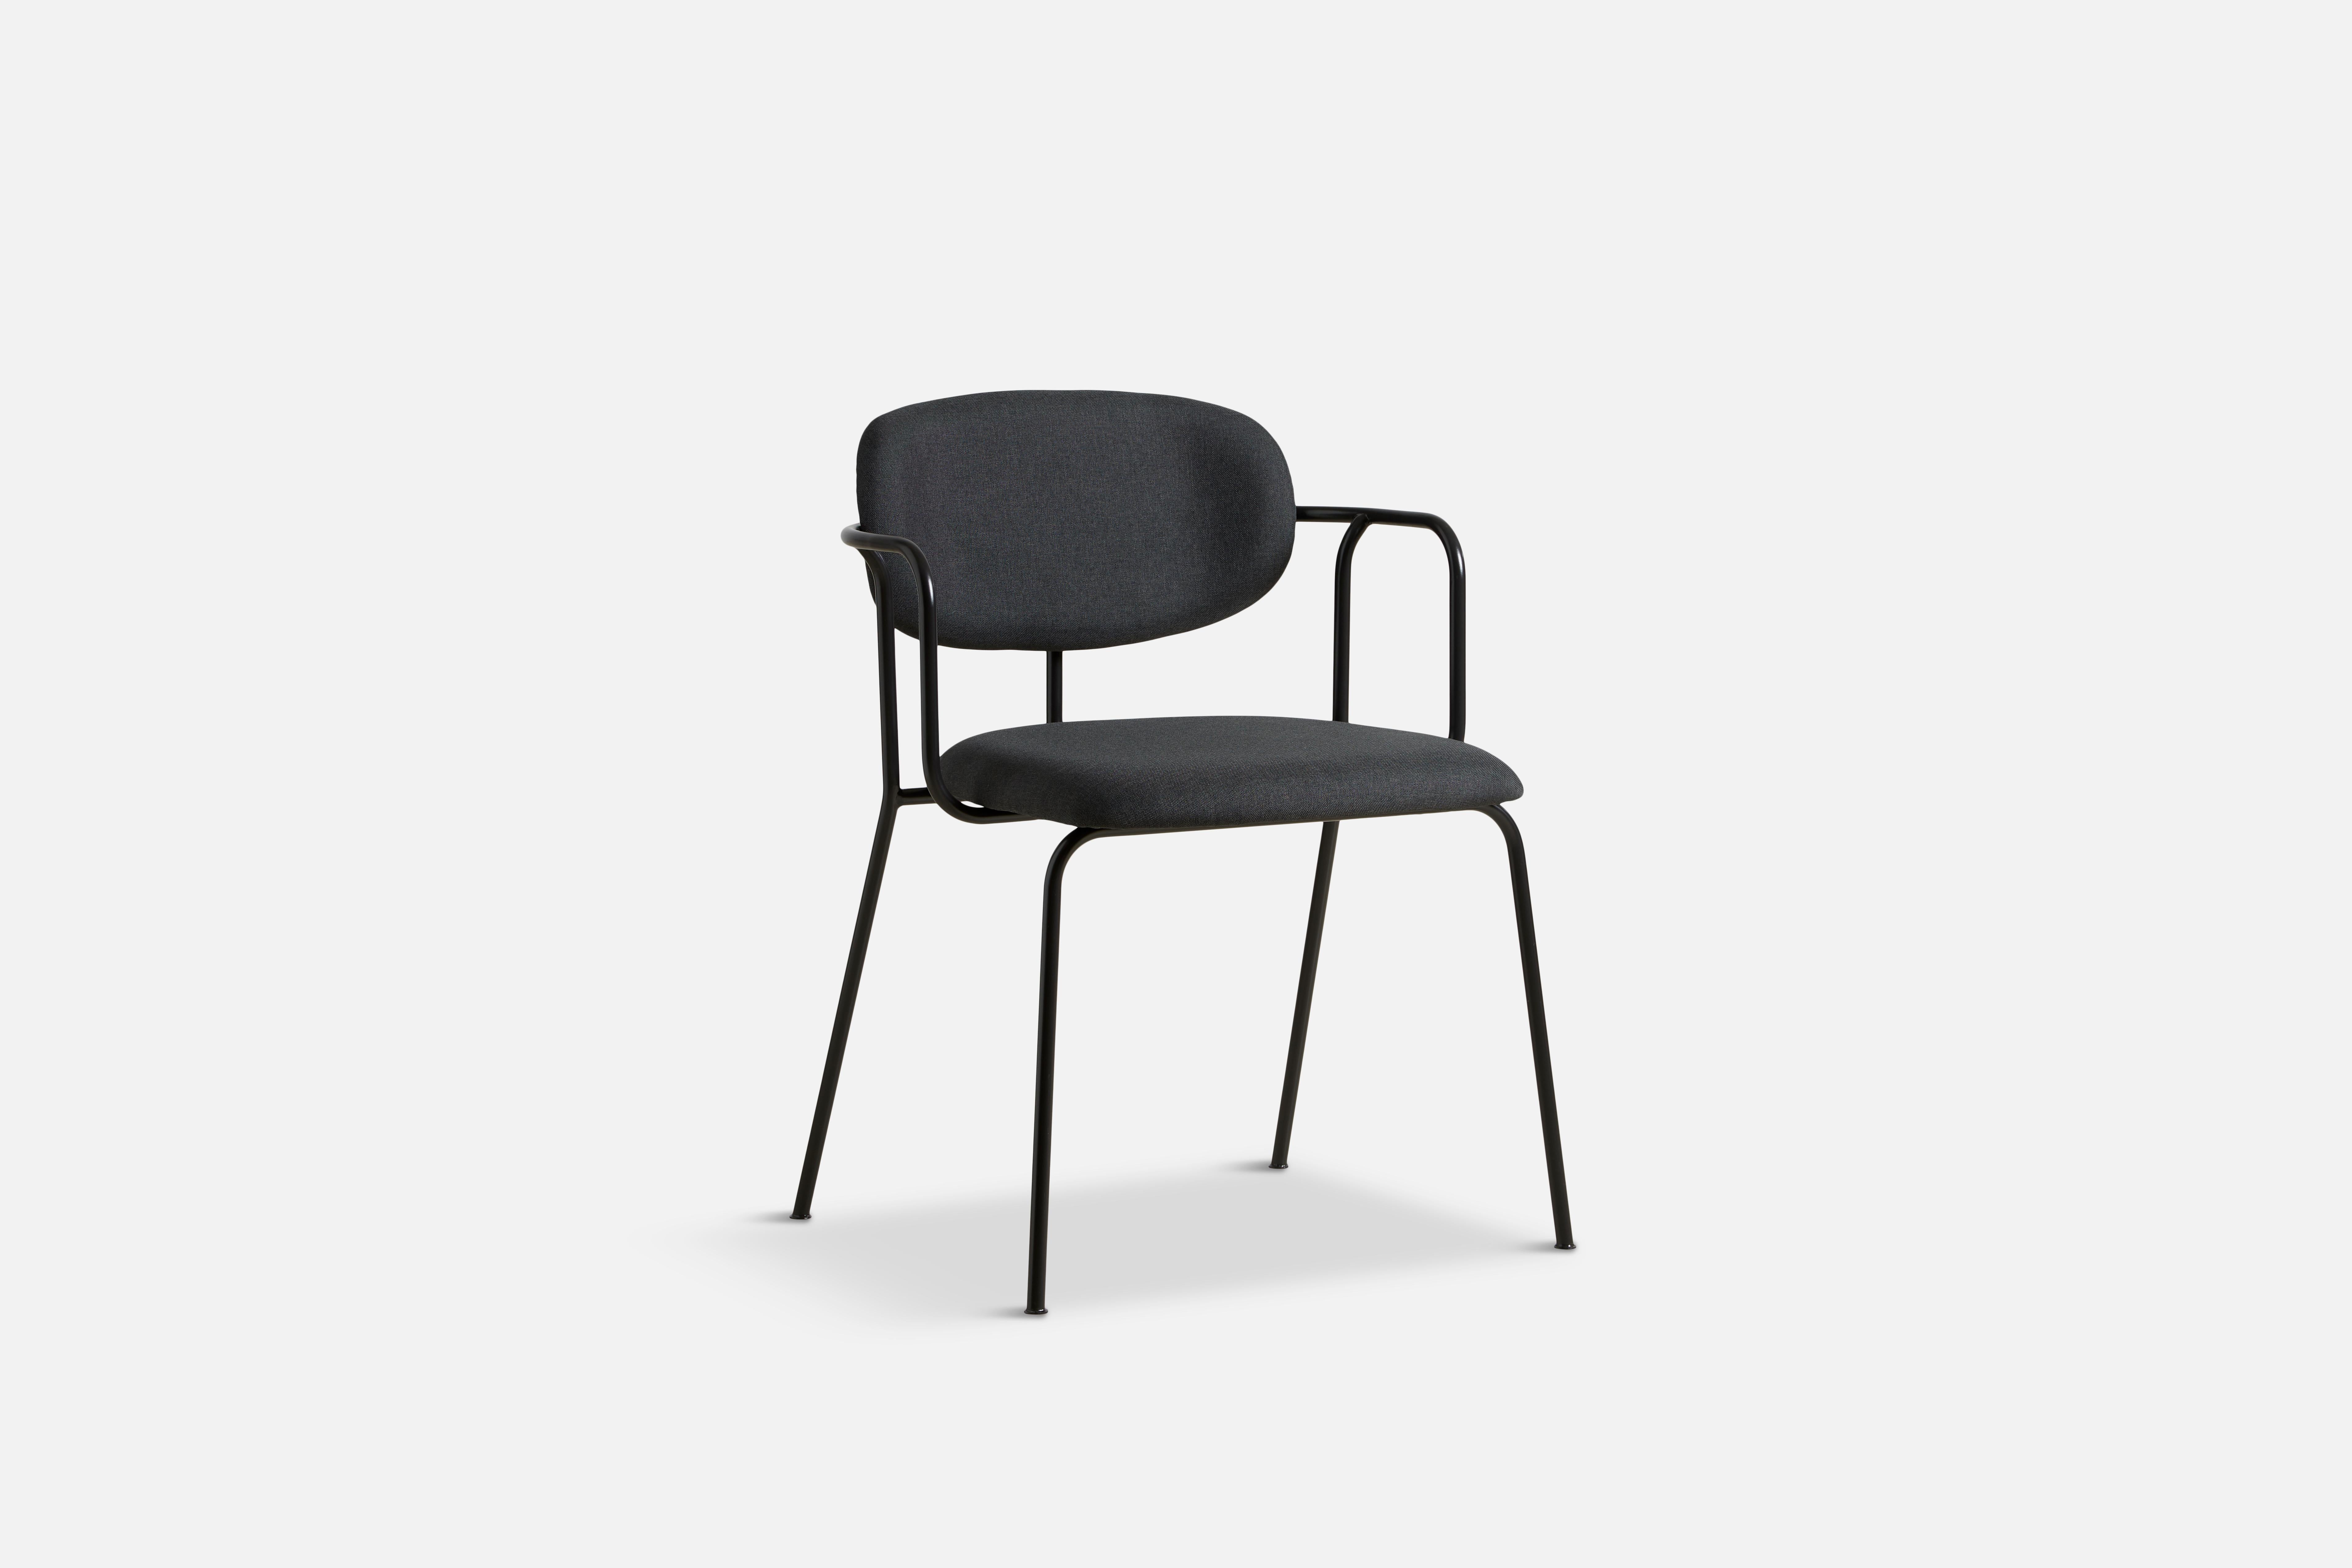 Chaise de salle à manger Frame dark de Mario Tsai Studio
Matériaux : Tissu, métal
Dimensions : P 53 x L 57 x H 77 cm

La chaise de salle à manger Frame est née de l'idée de concevoir une chaise comme on construit un petit bâtiment. Fortement